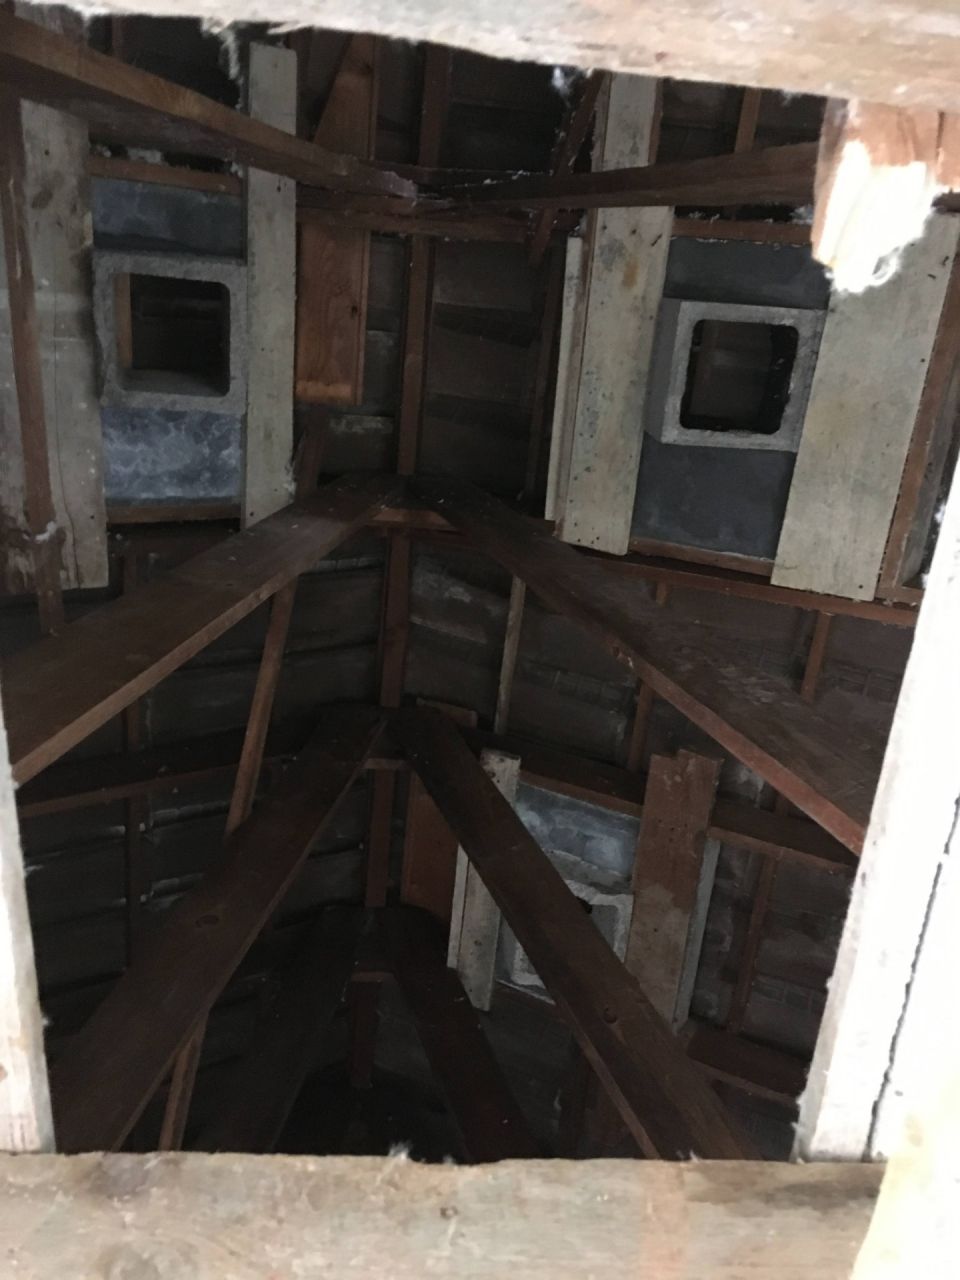 Sortie de chemine sous toiture vue de bas en haut